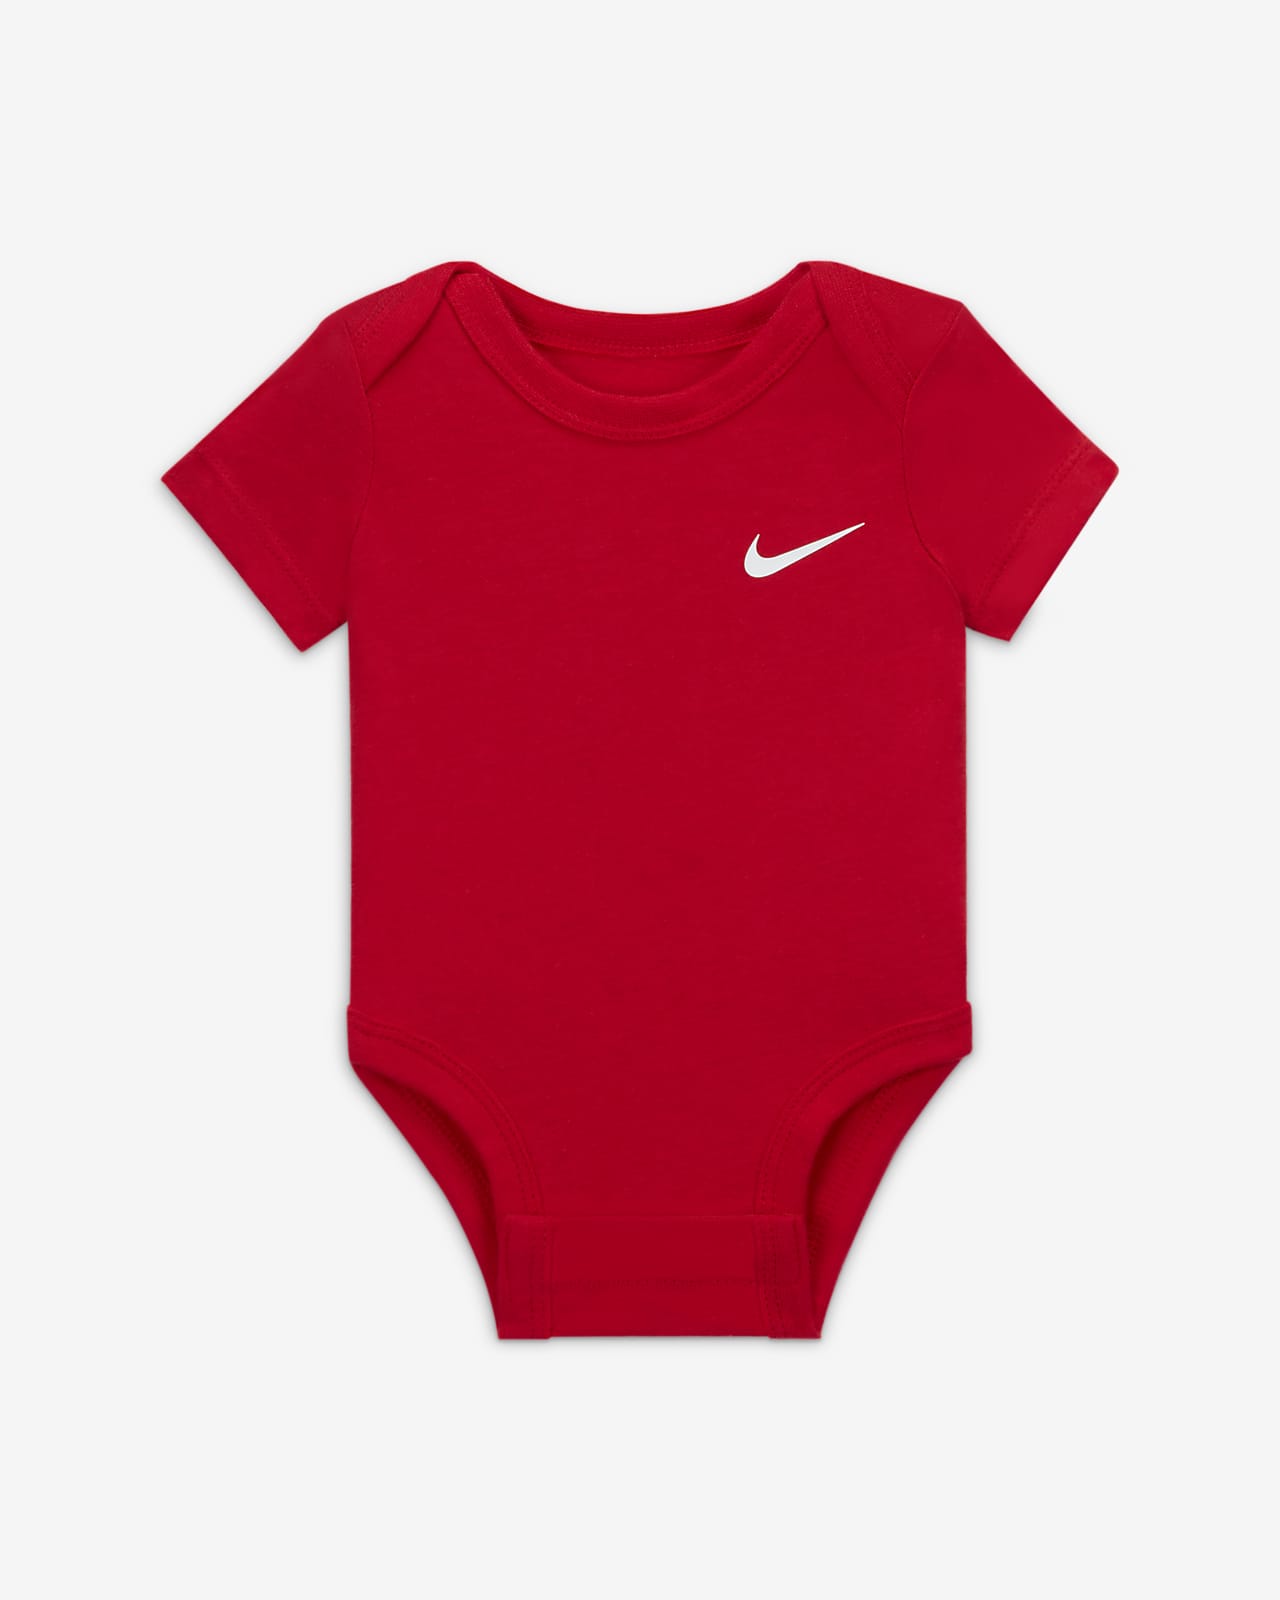 at tilføje Doven At afsløre Nike-body til babyer (3-6 M) med Swoosh (pakke med 3 stk.). Nike DK